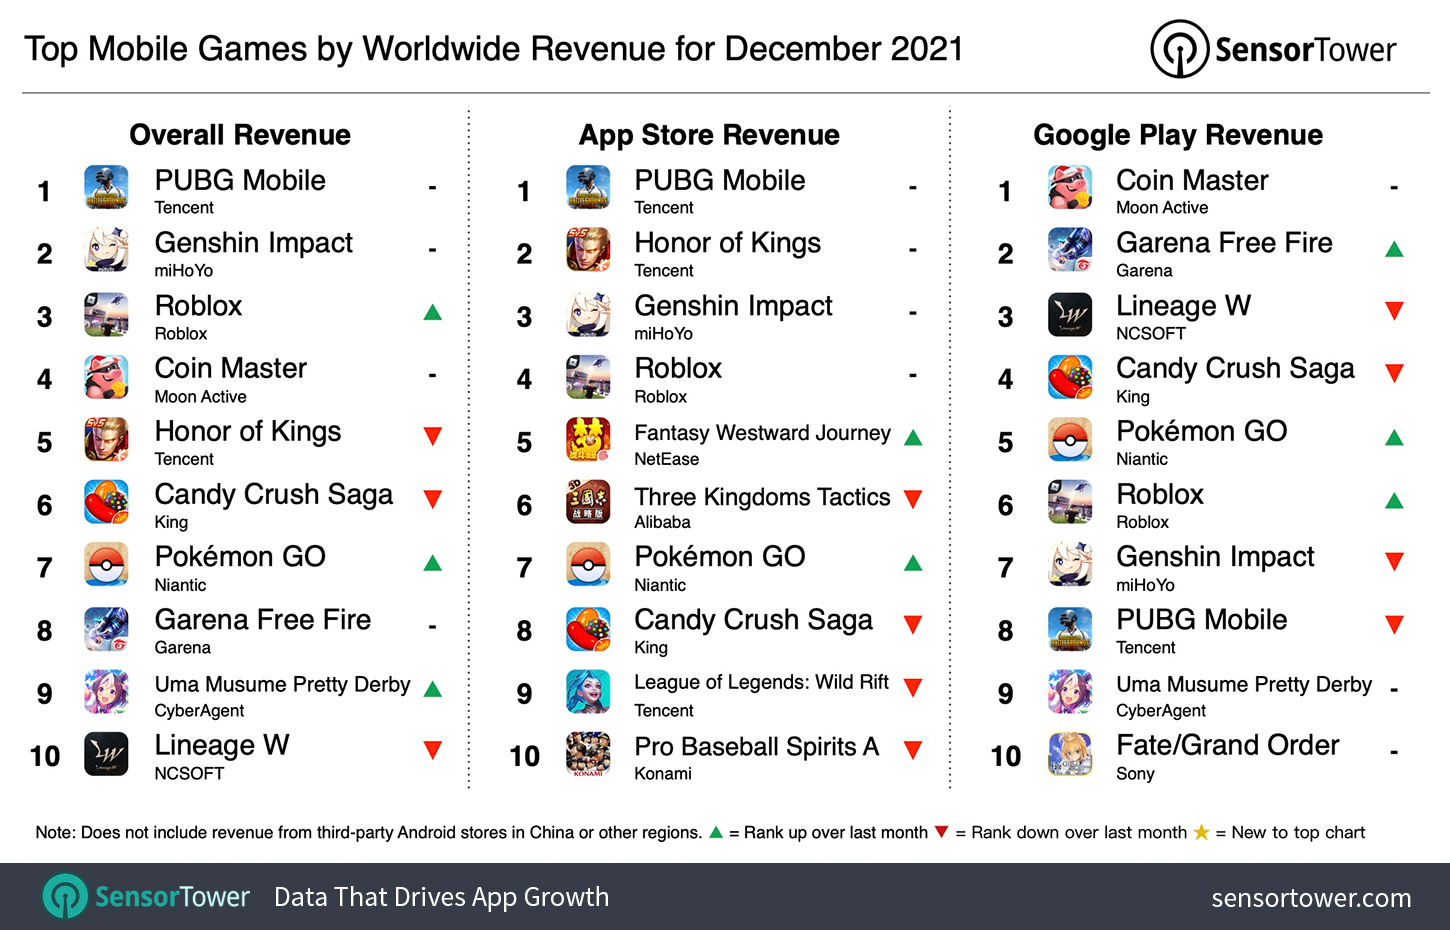 Топ самых прибыльных мобильных игр за декабрь 2021 года по версии агентства SensorTower